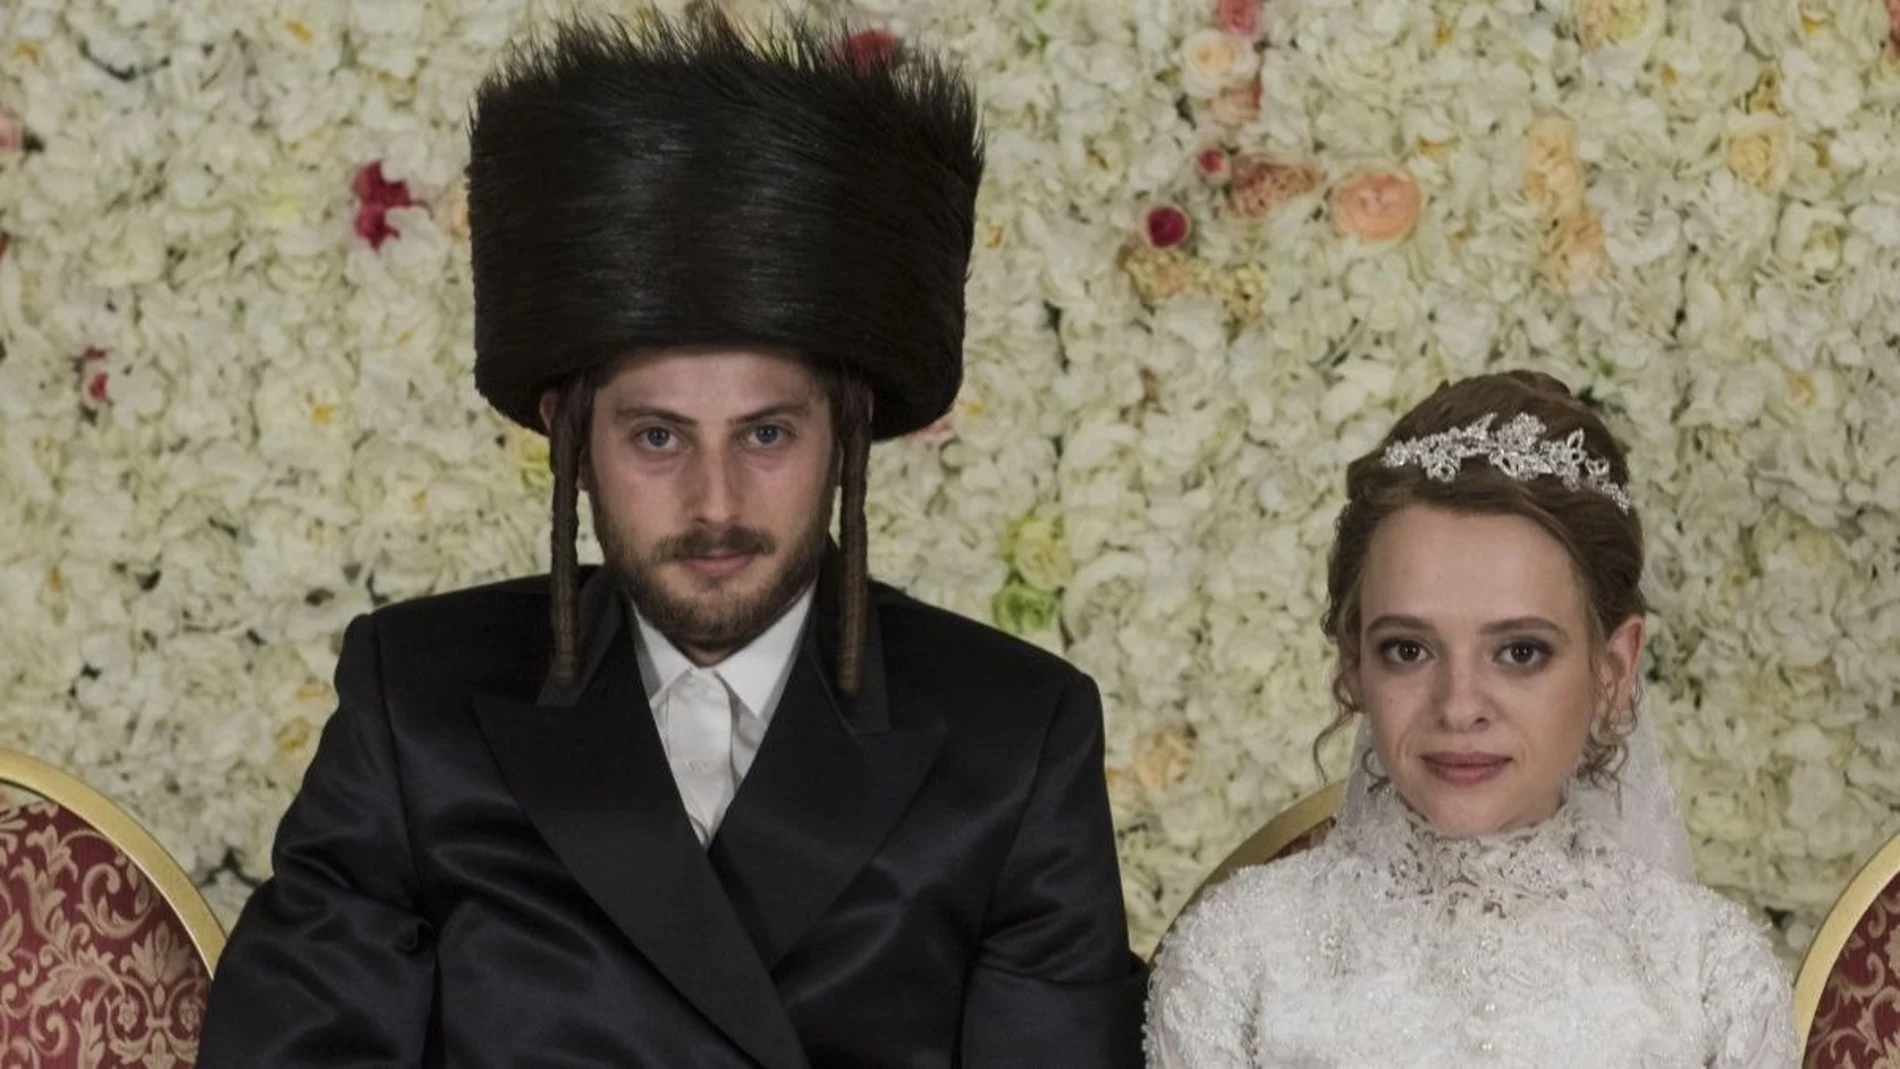 Retrato de novios. Escena de la boda de Esther Shapiro con su marido